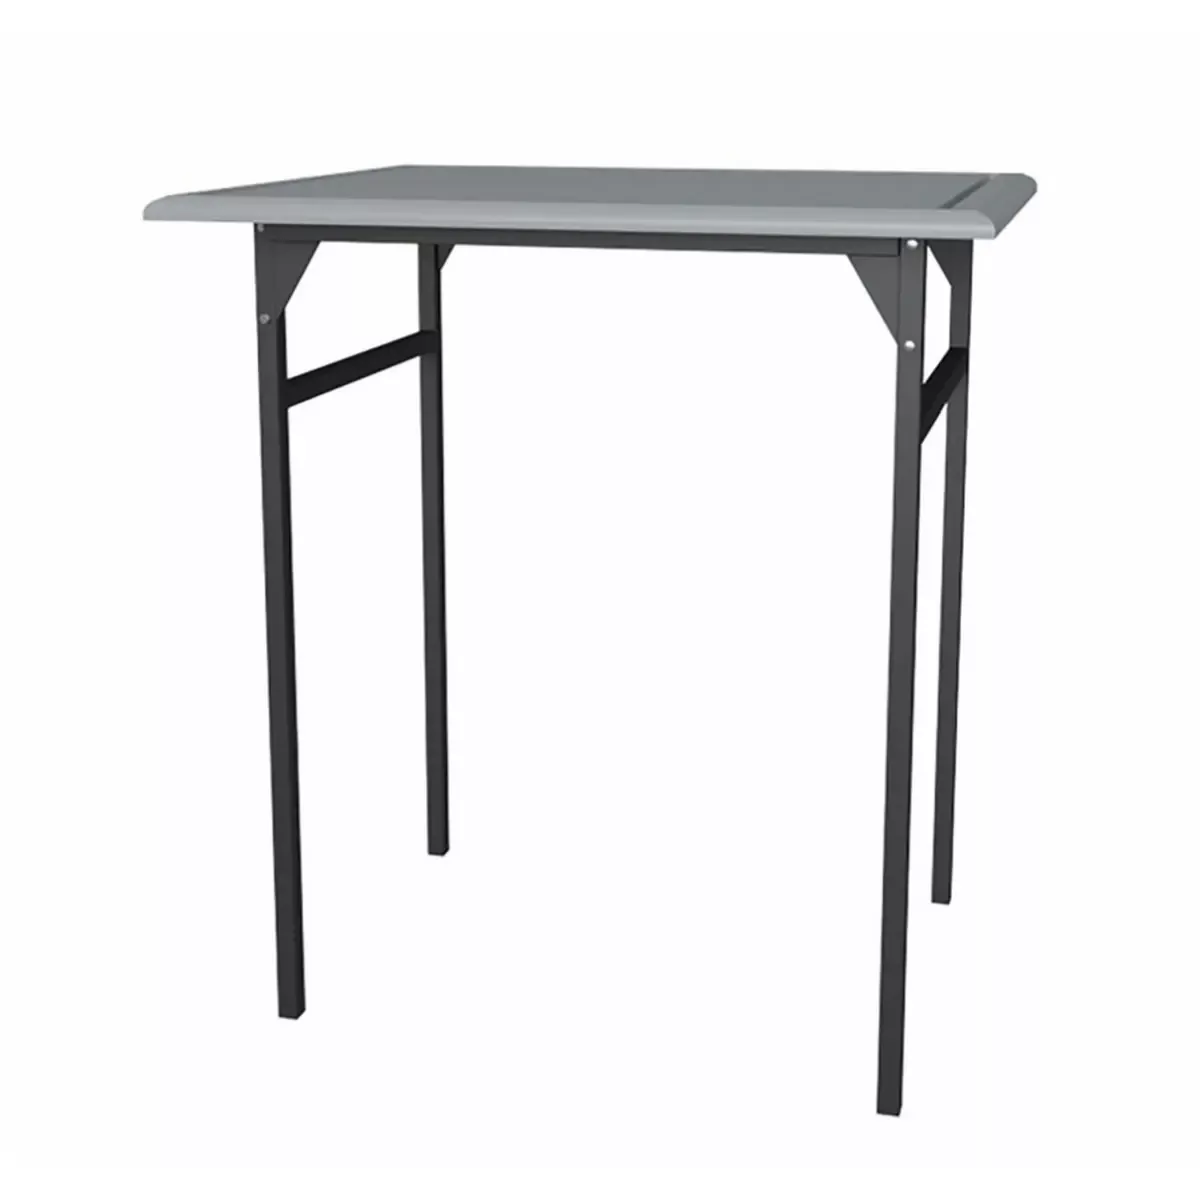 Tisch H.75 x B.70 x T.60 cm für Tischwahlkabine 70x60x50, hellgrau